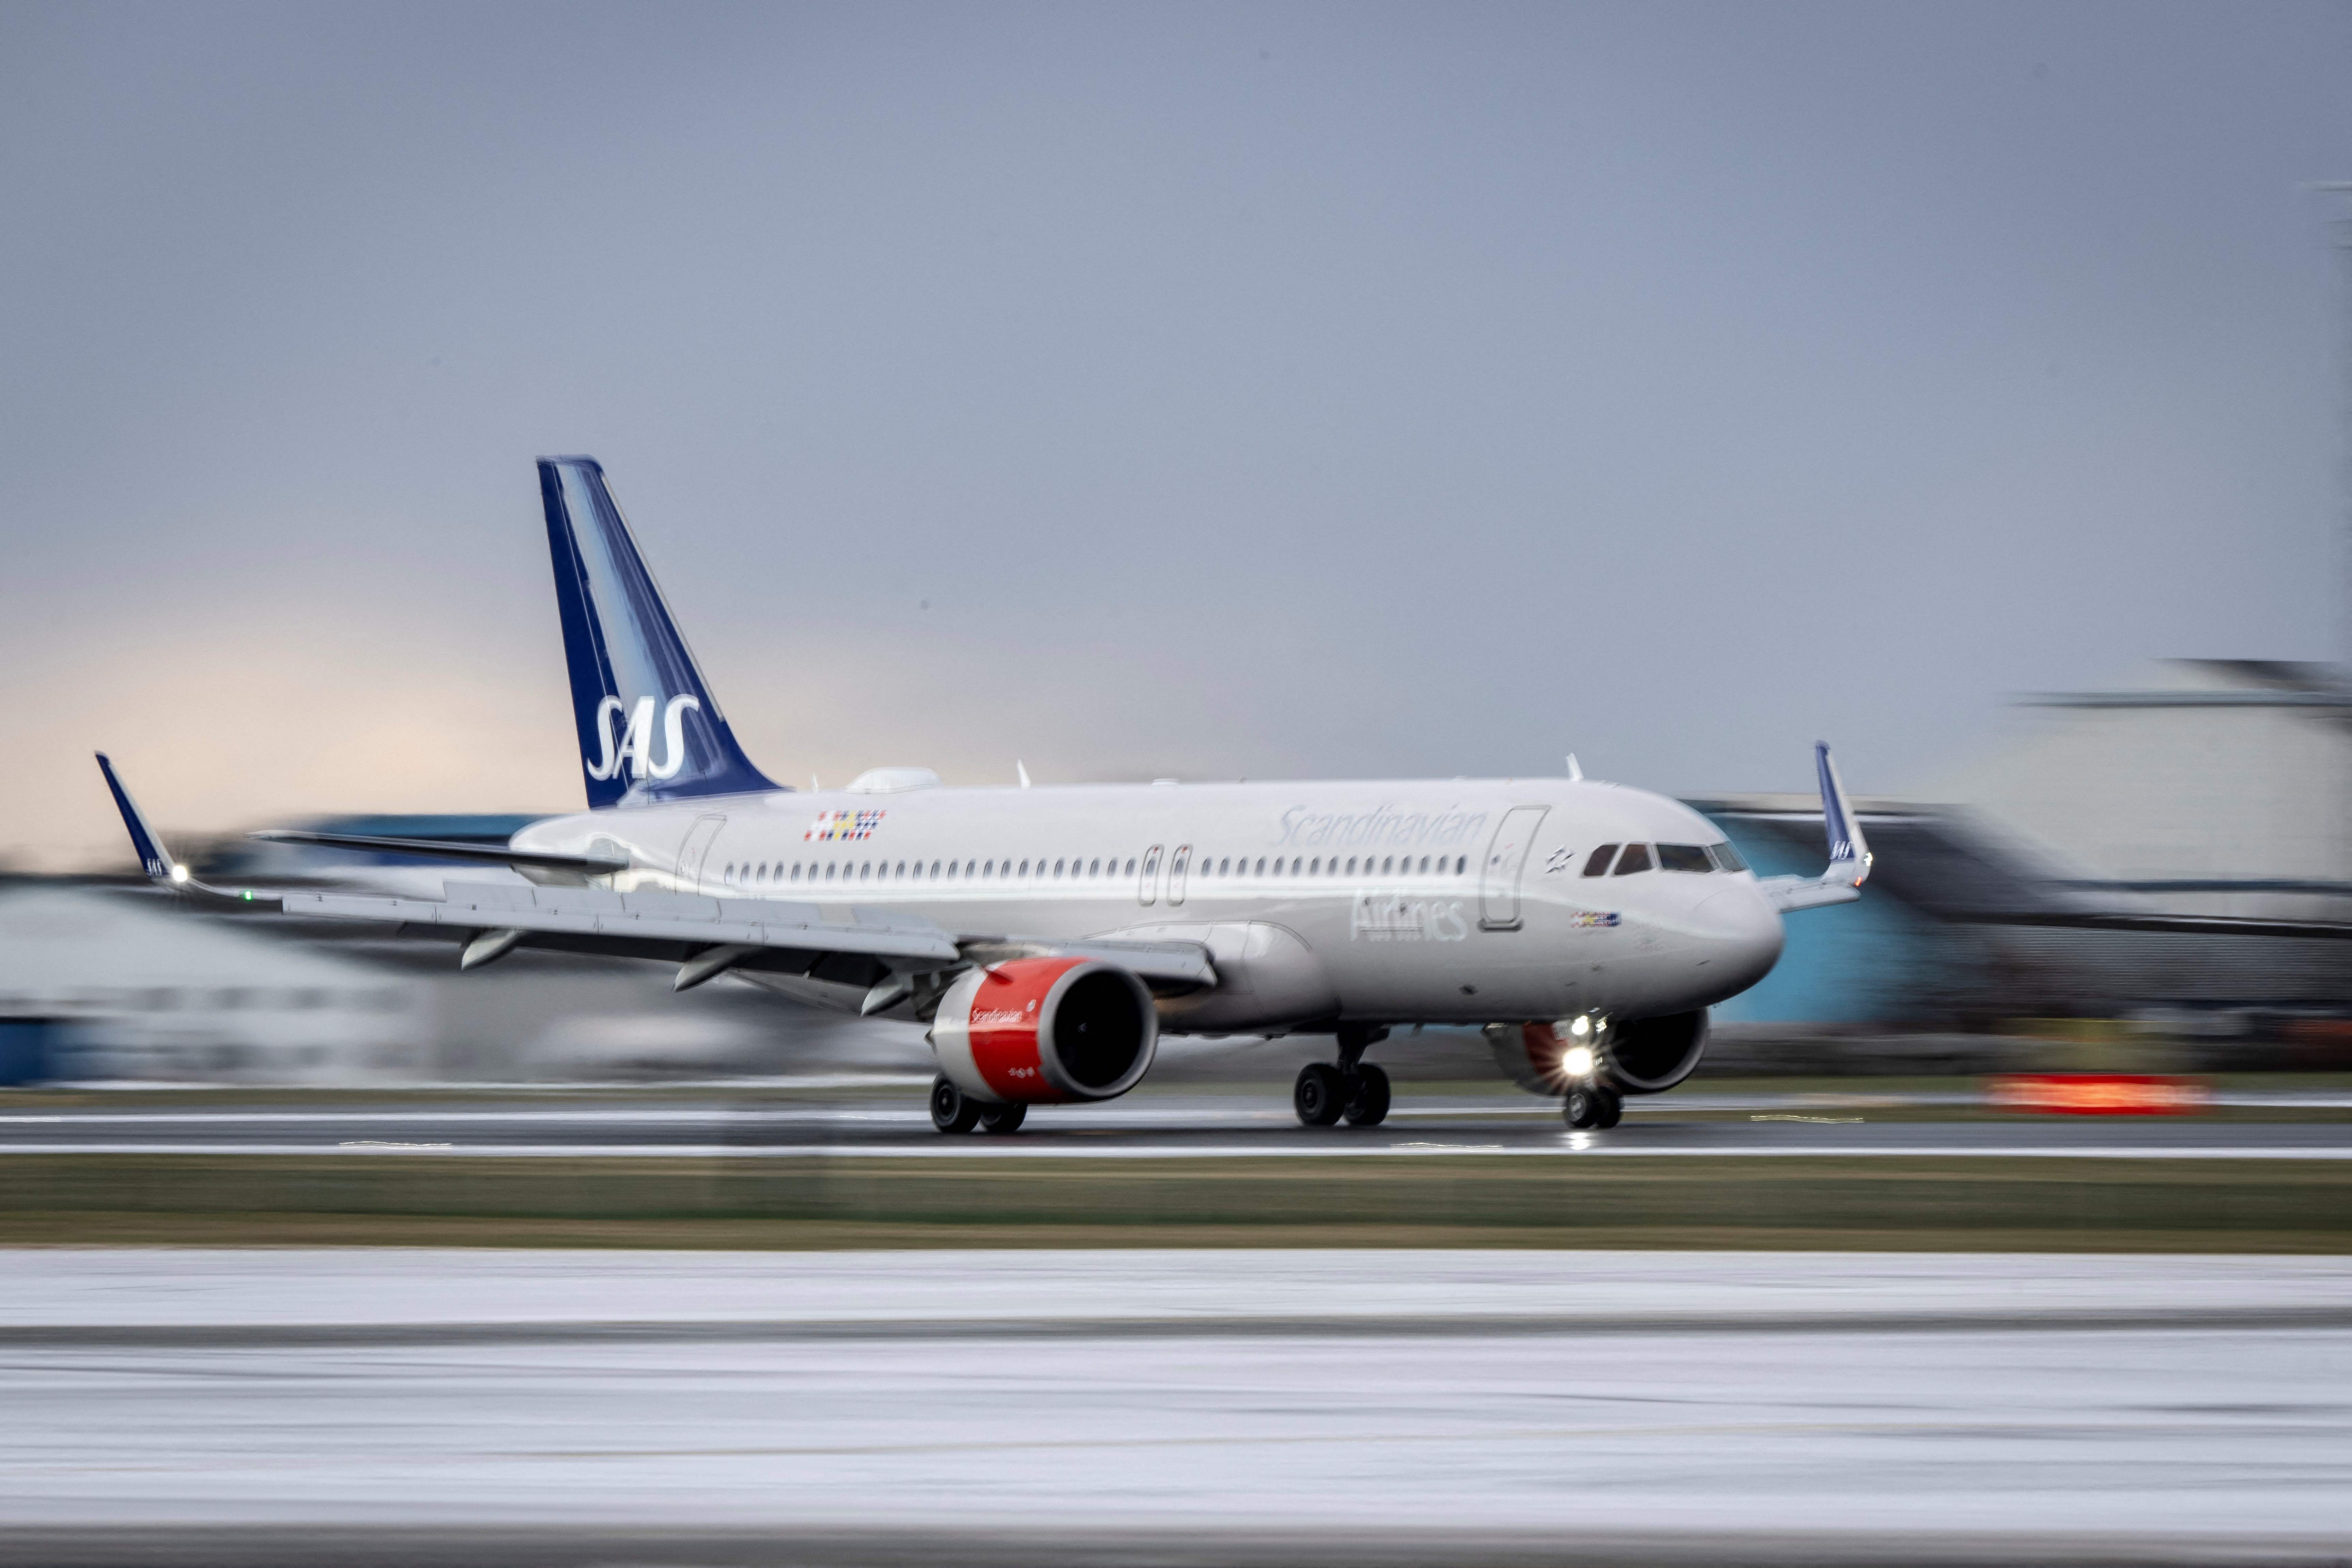 An SAS plane lands in Denmark